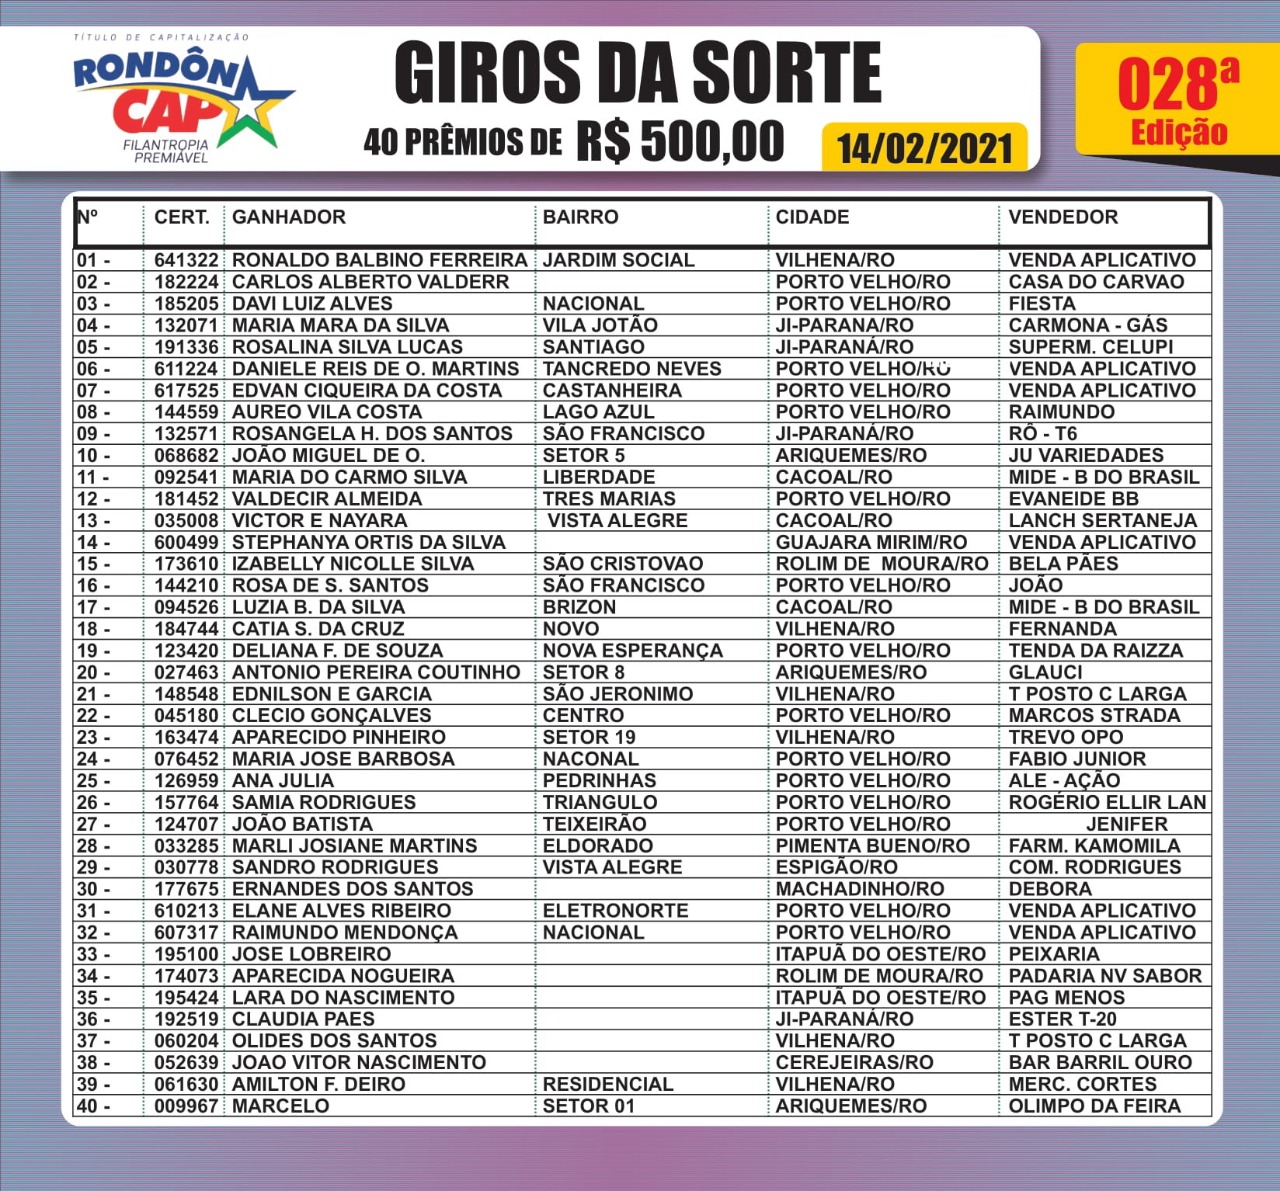 Veja quem ganhou o Corolla GLI sorteado ontem no Rondoncap - News Rondônia